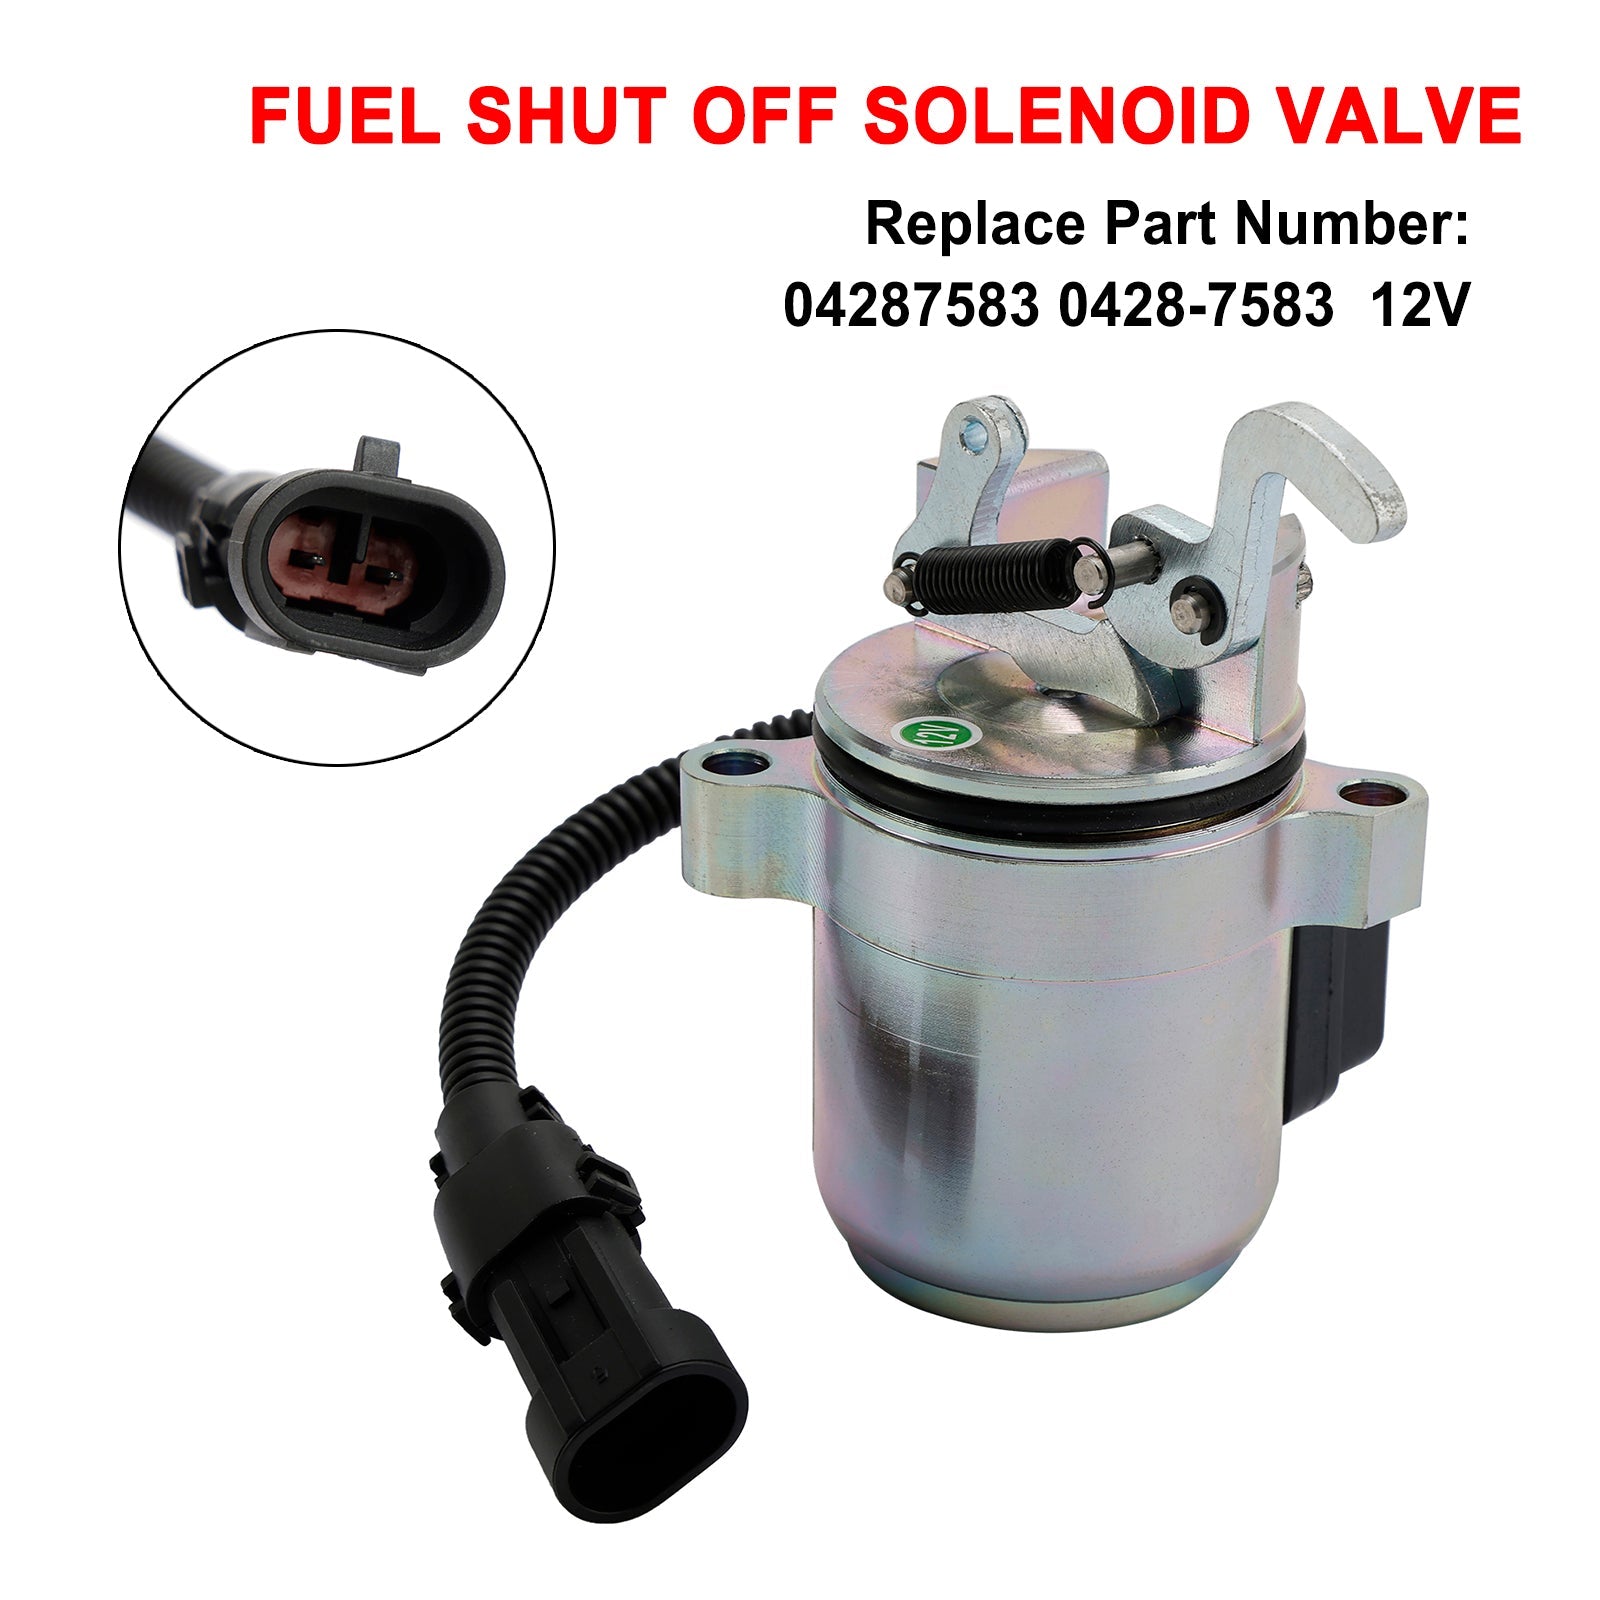 0428-7583 0428-7116 Solenoide de apagado de combustible de 12 V compatible con Deutz 1011 2011